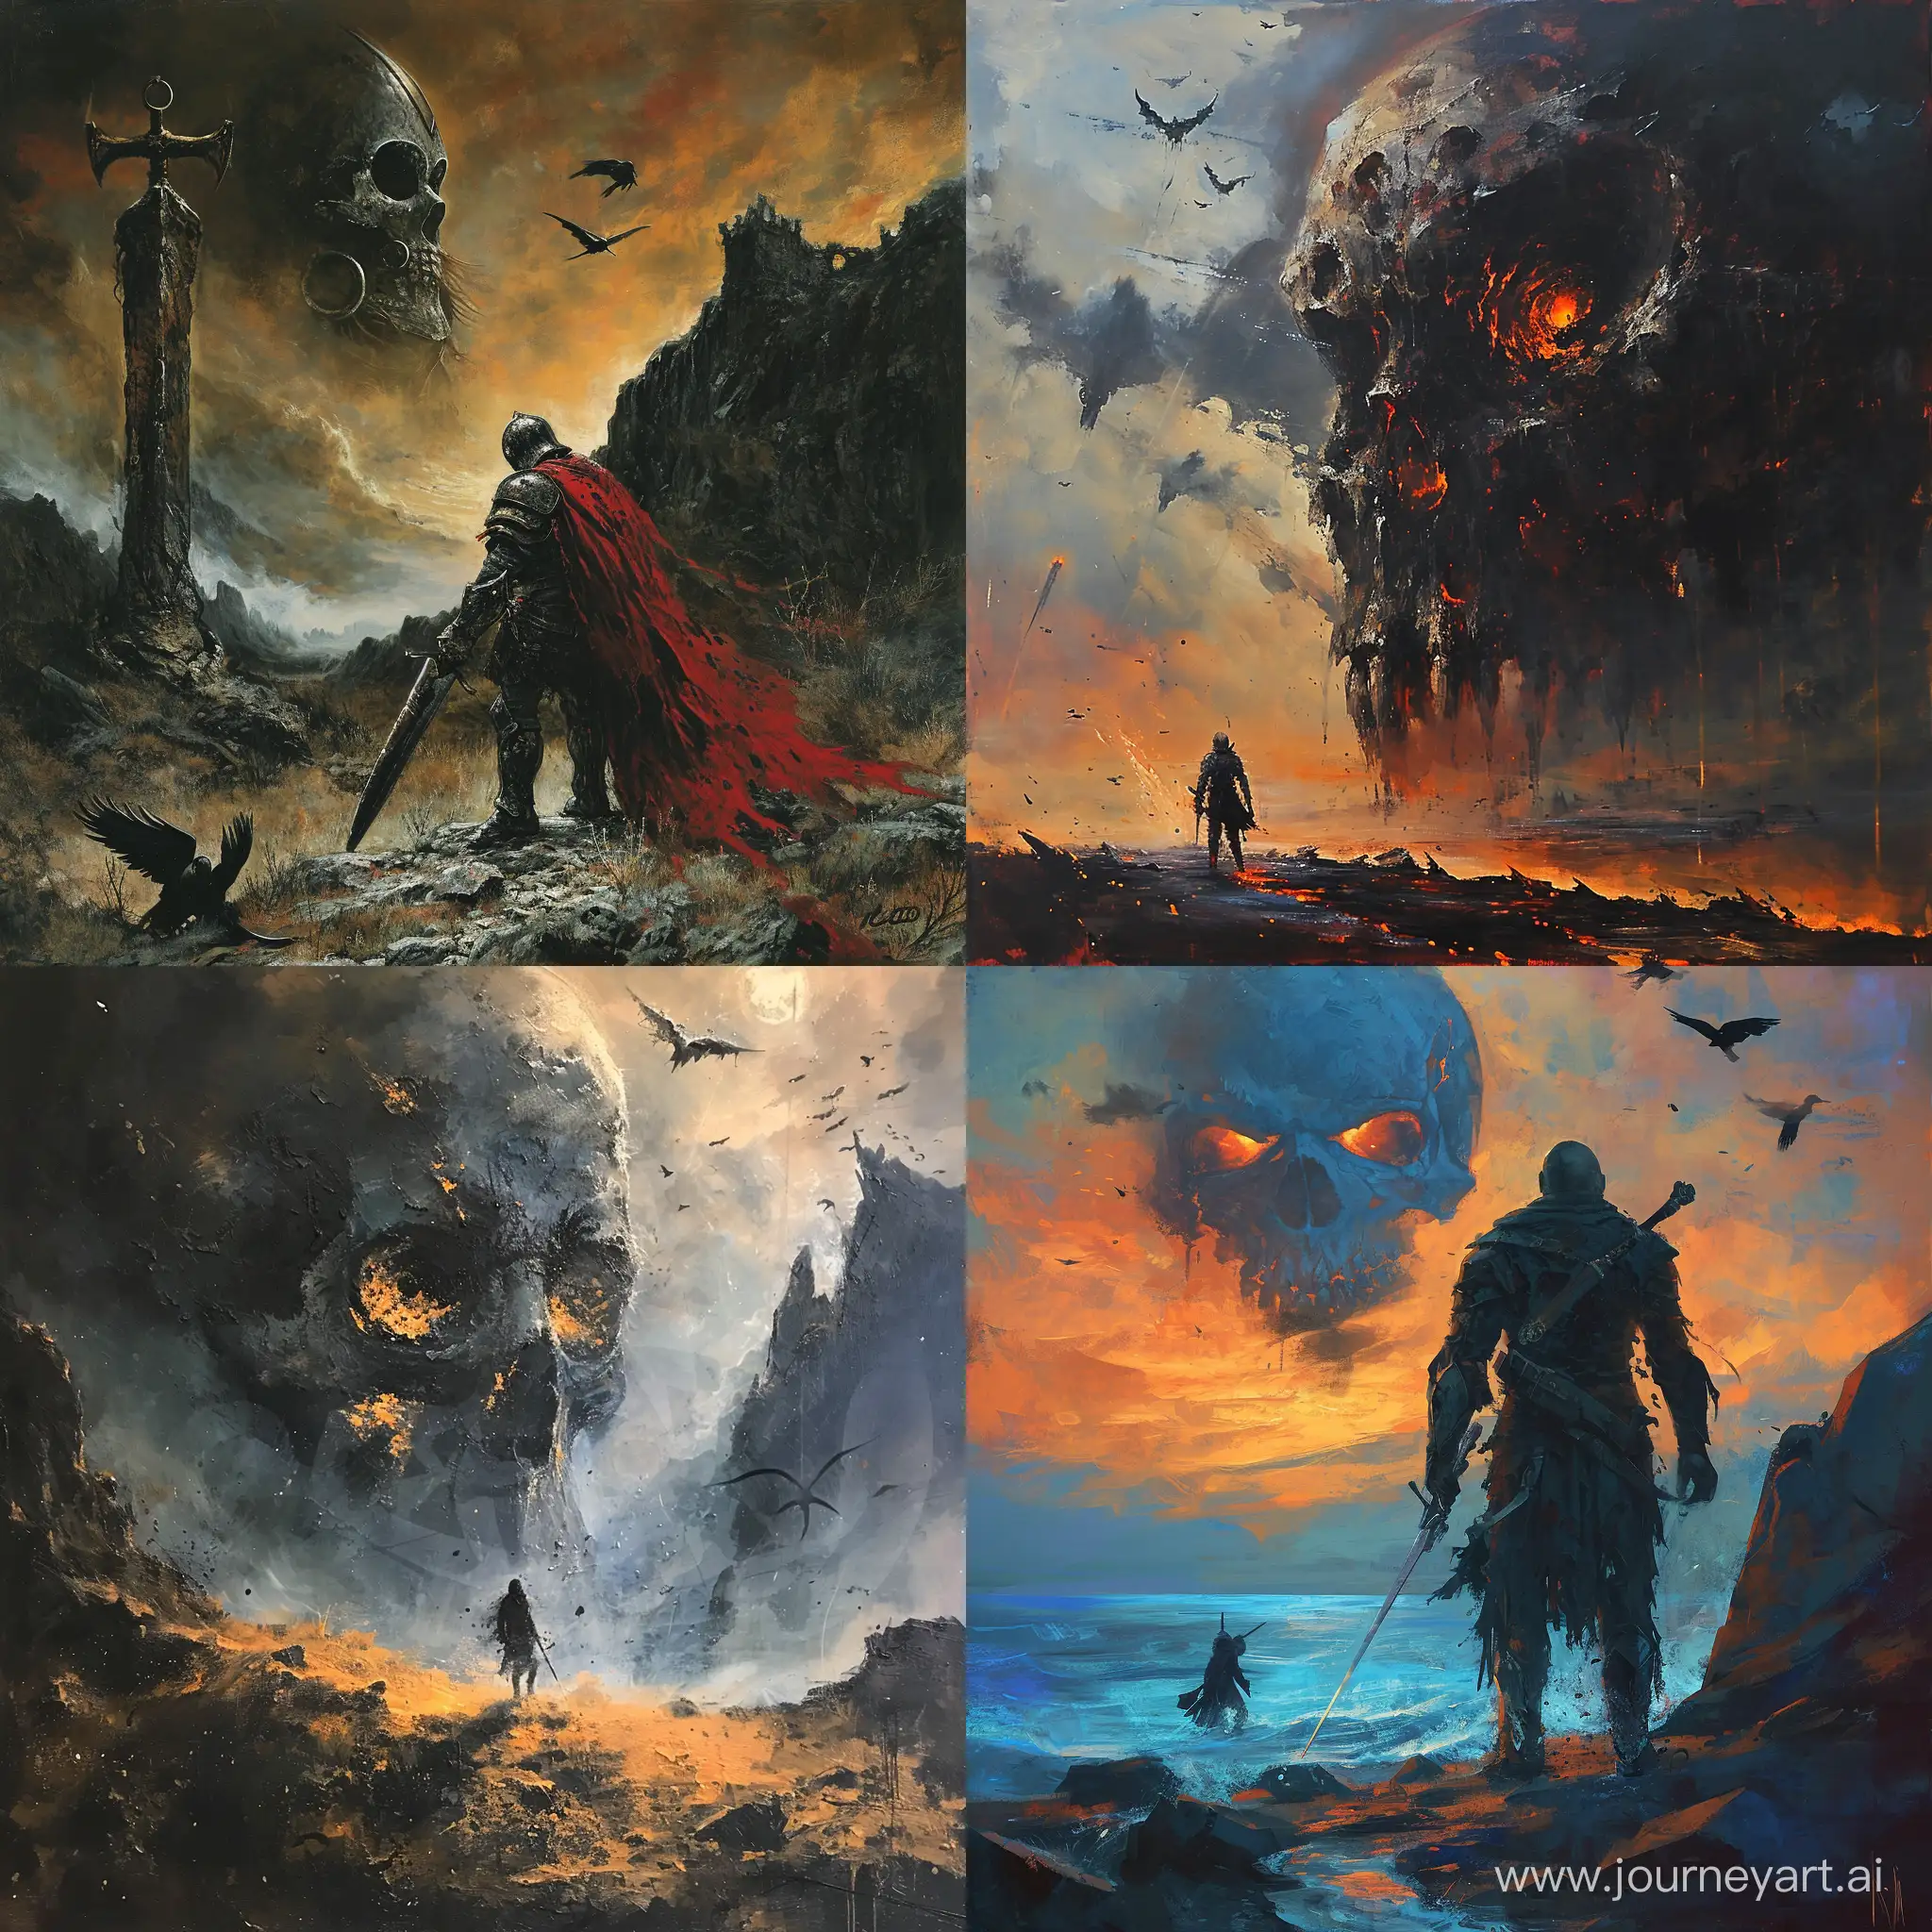 Warrior-Confronts-Giant-Skull-in-Desolate-Dusk-Landscape